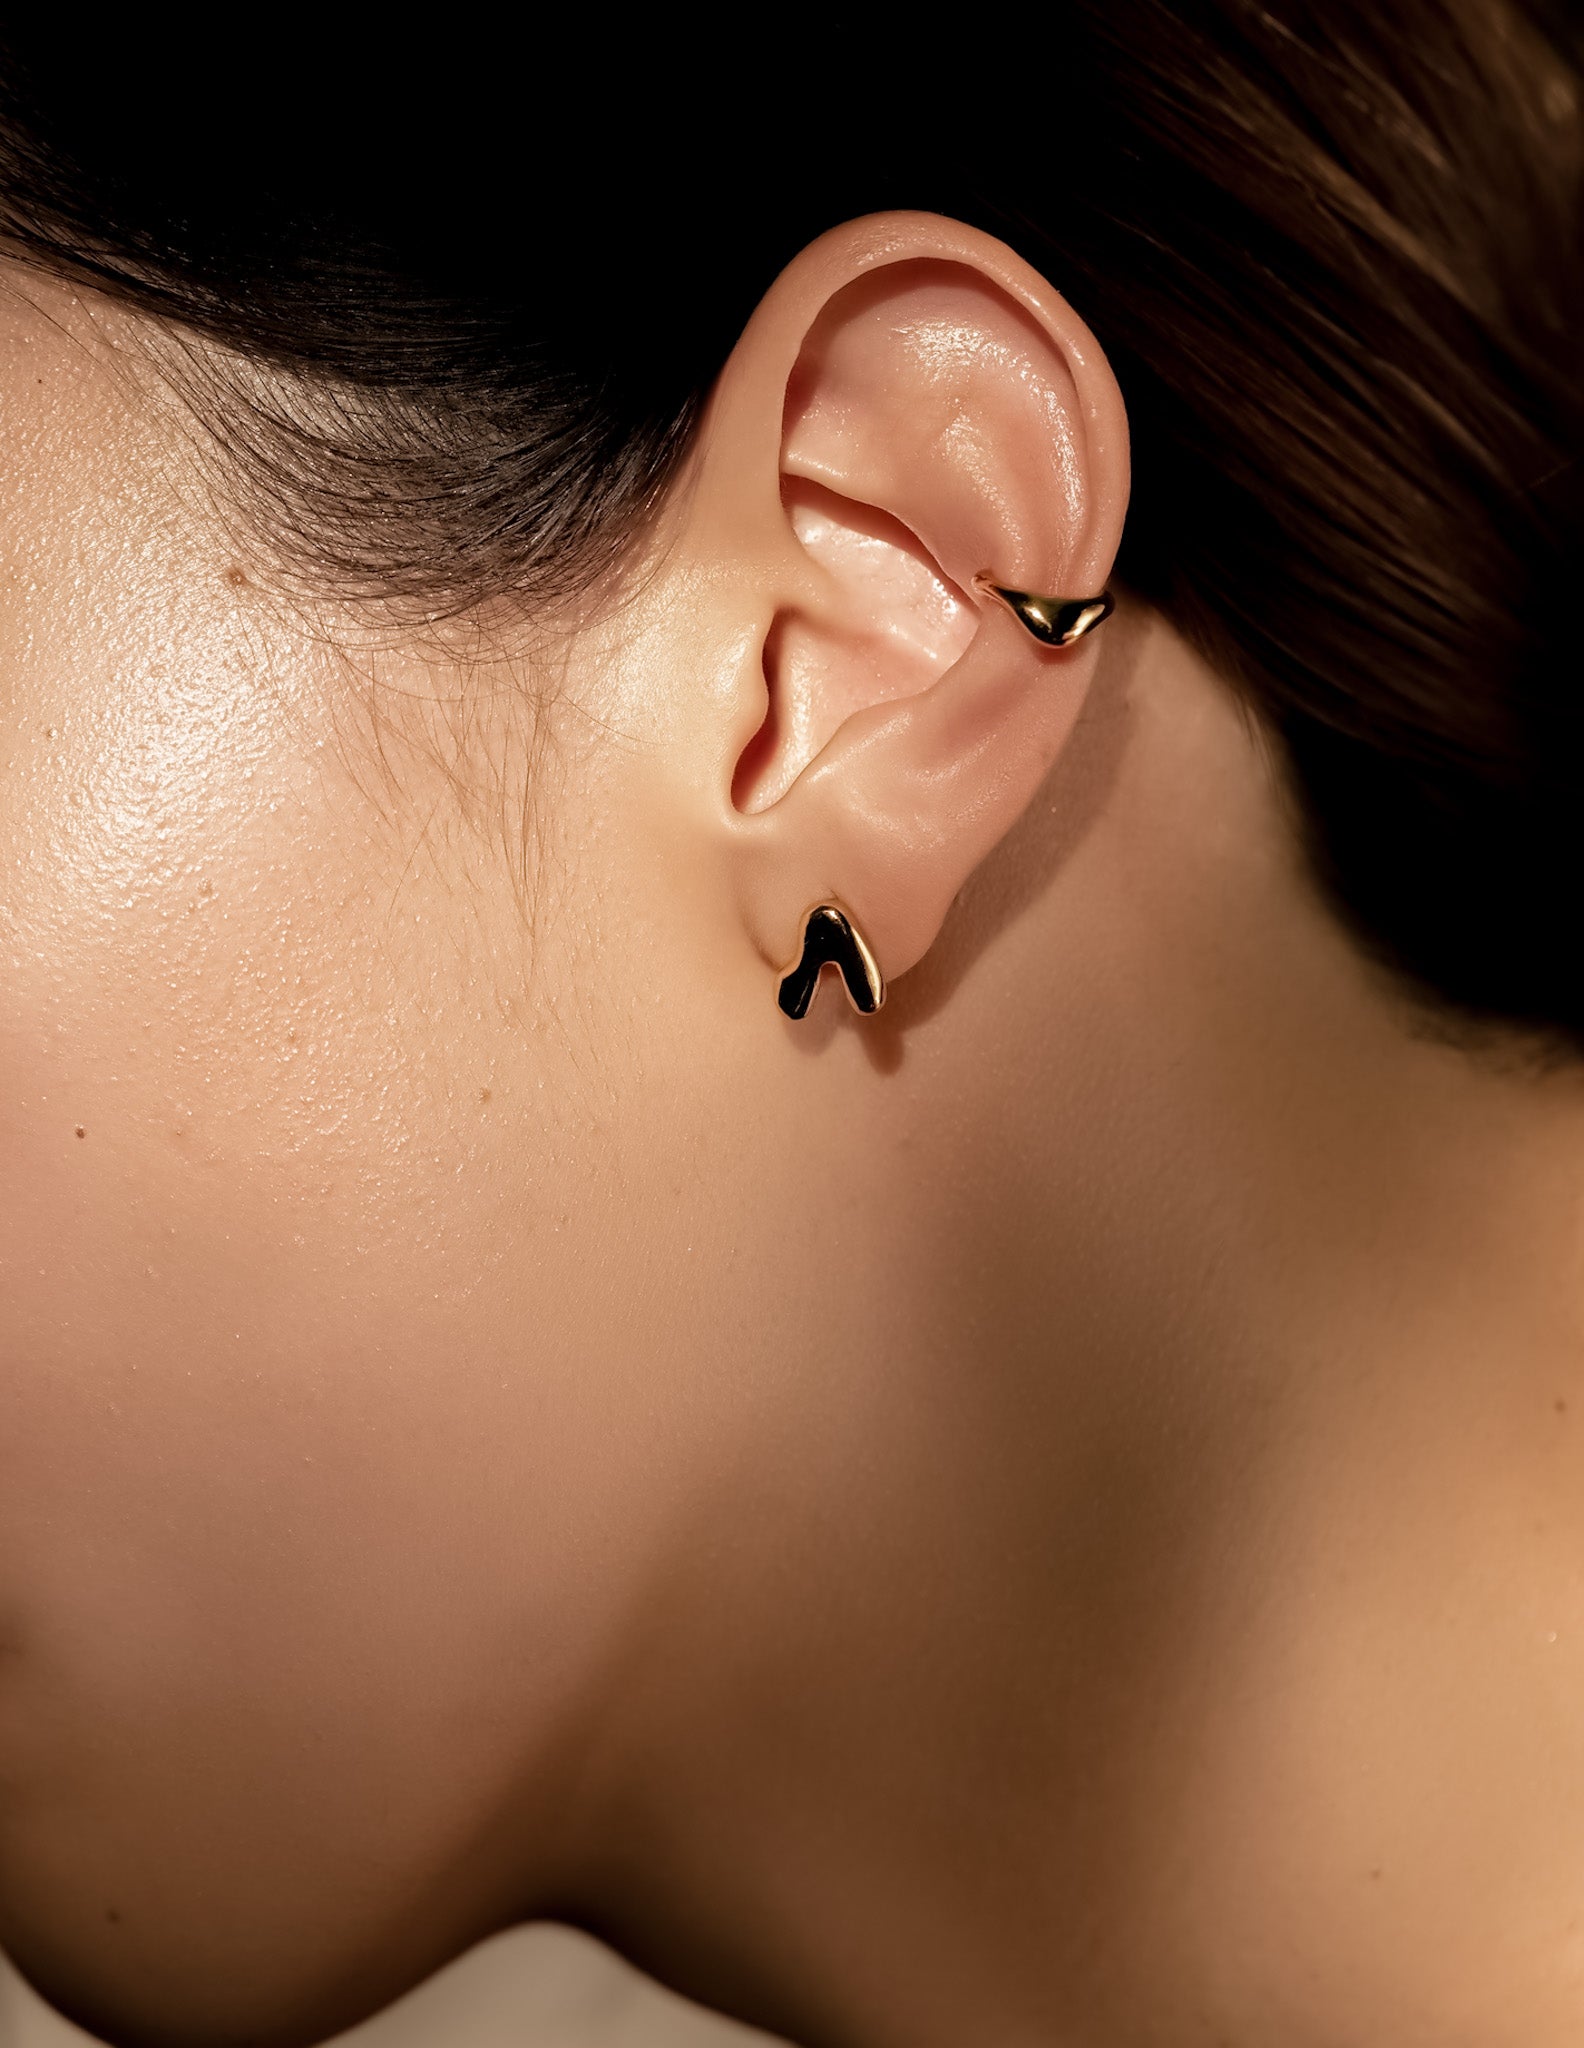 Kharys jewelry organic shaped flow stud earrings in 18k gold vermeil.